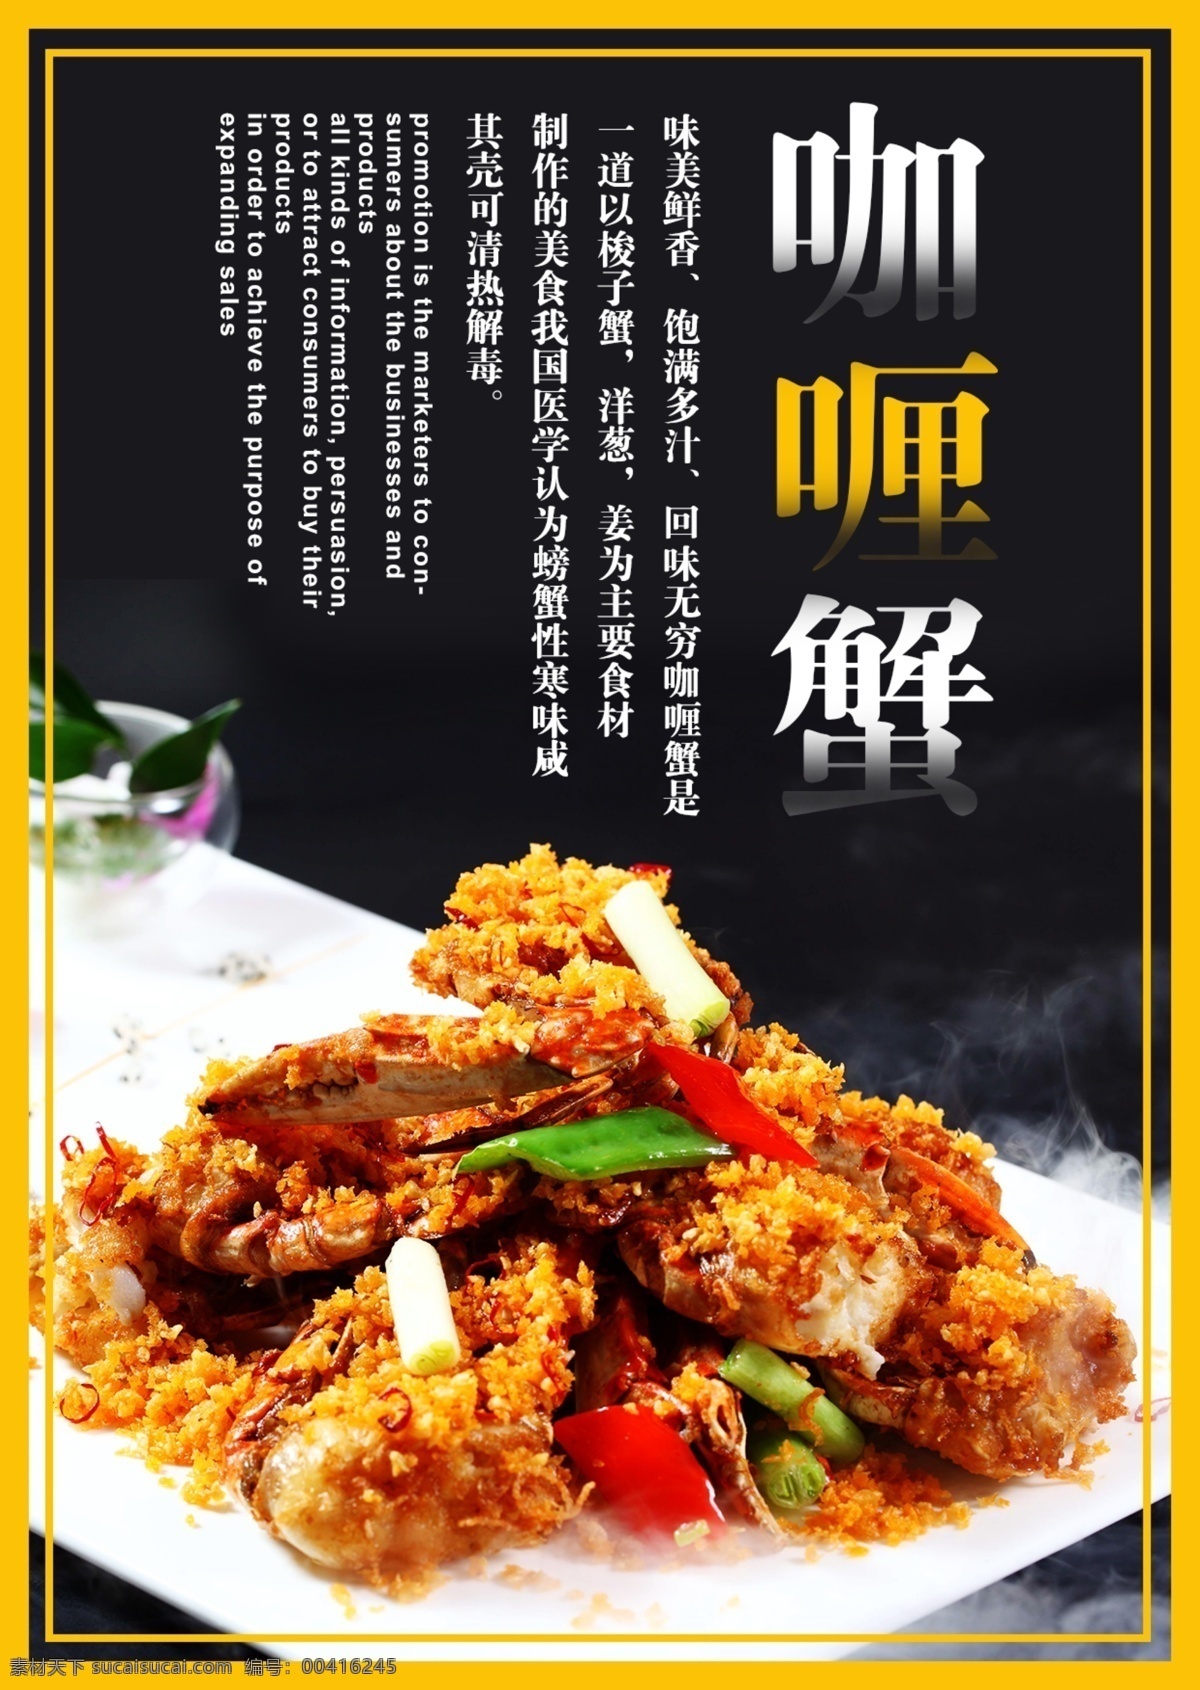 黑色 背景 简约 大气 泰国 咖喱 蟹 菜谱 美味 美食 模板 菜单 咖喱蟹 料理